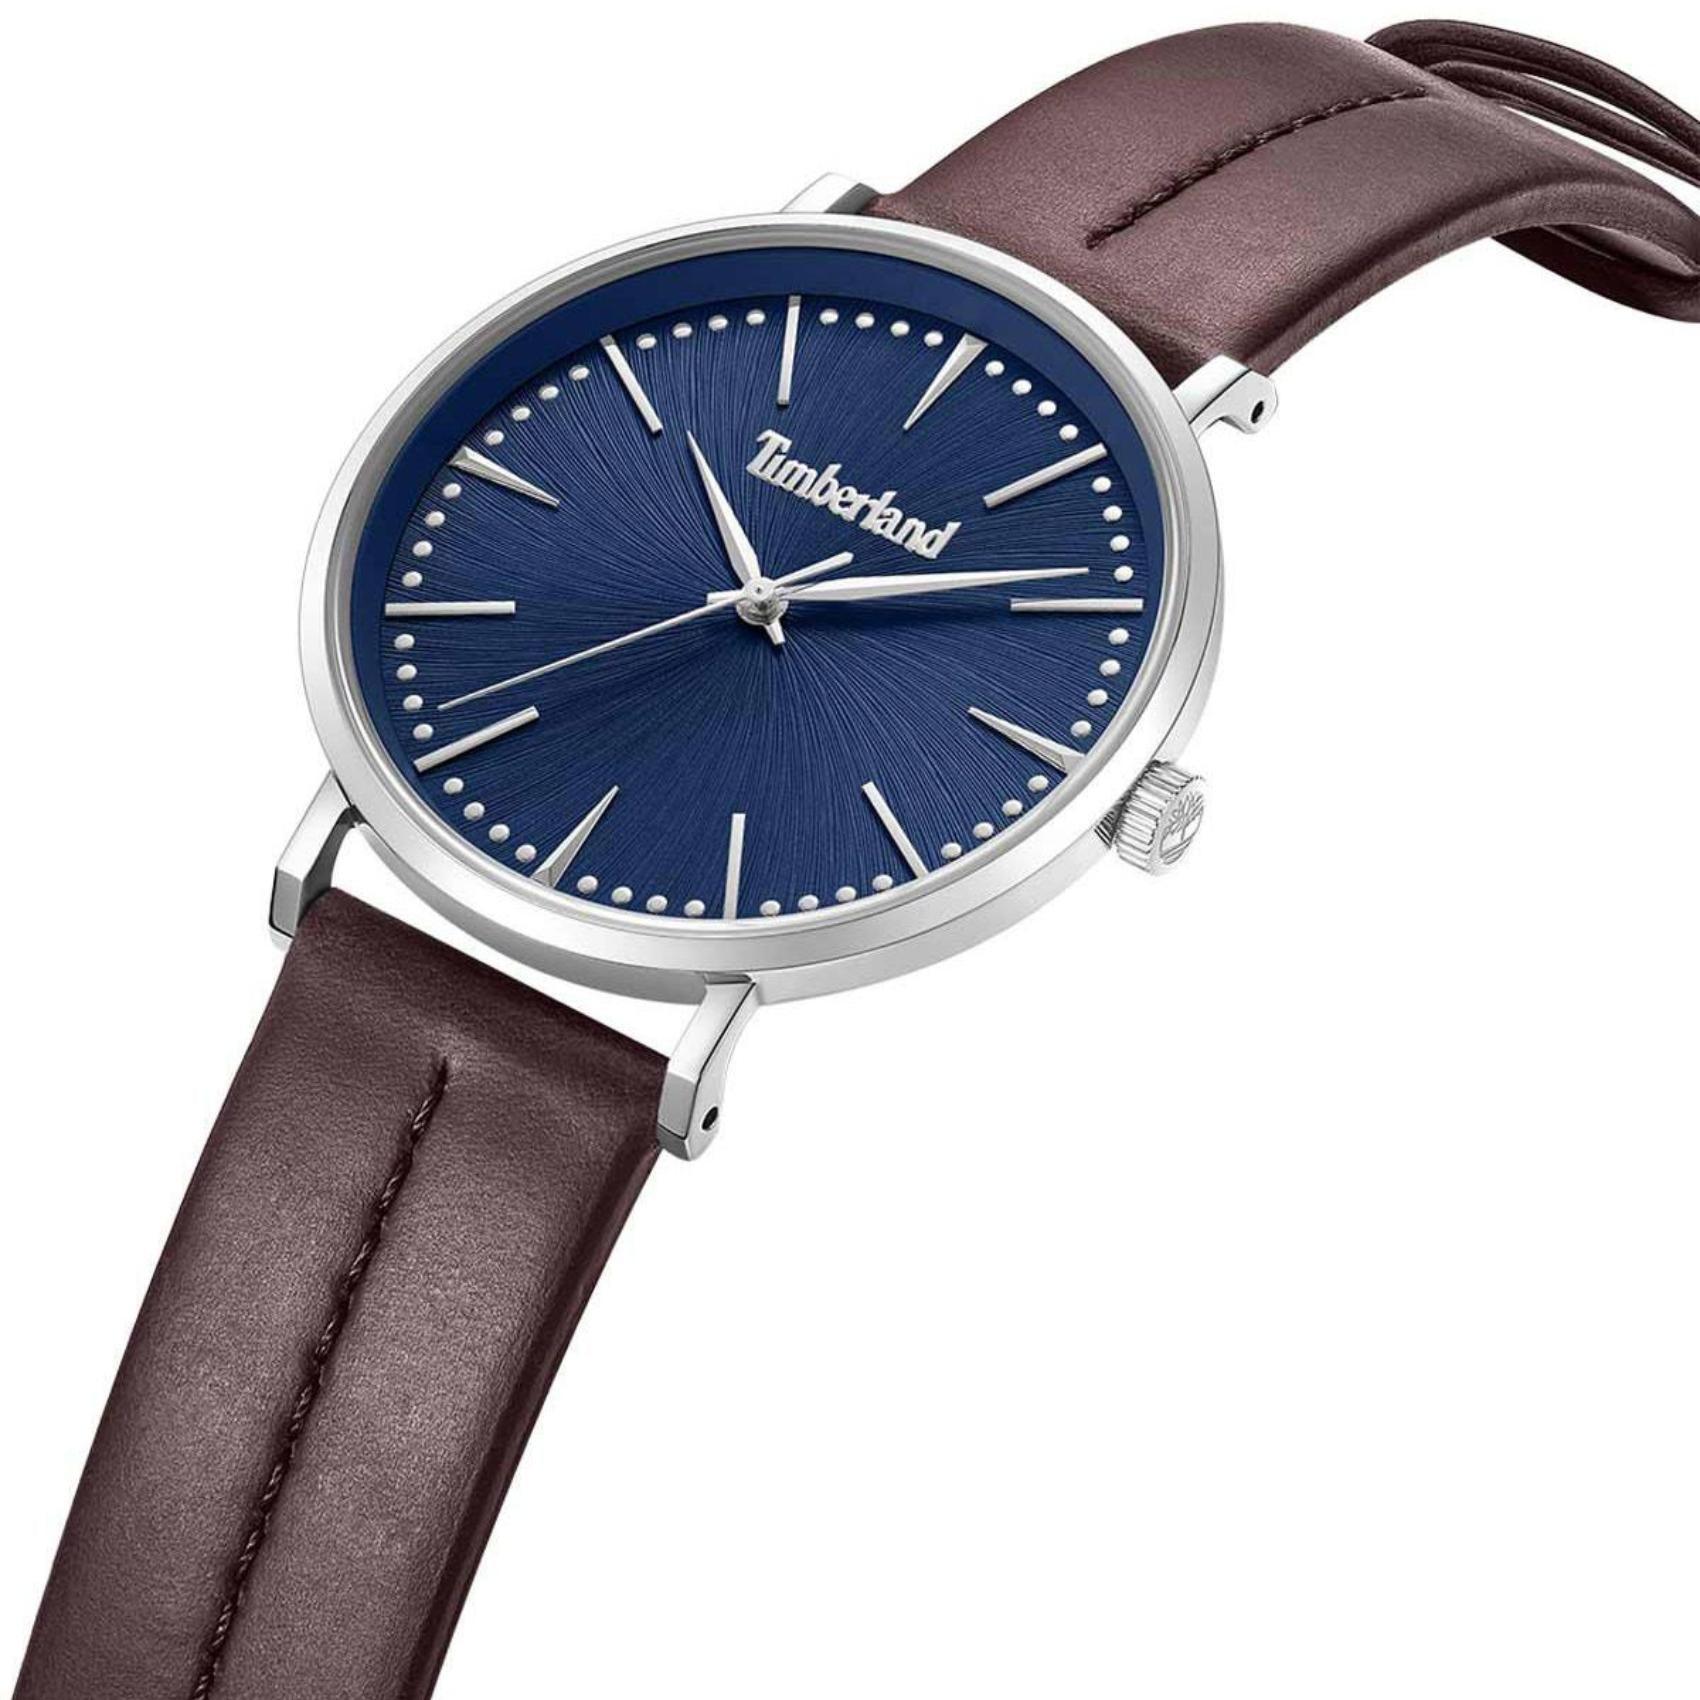 Αντρικό ρολόι Timberland Ripton TDWGA0029202 με καφέ δερμάτινο λουράκι και μπλε καντράν διαμέτρου 42mm.